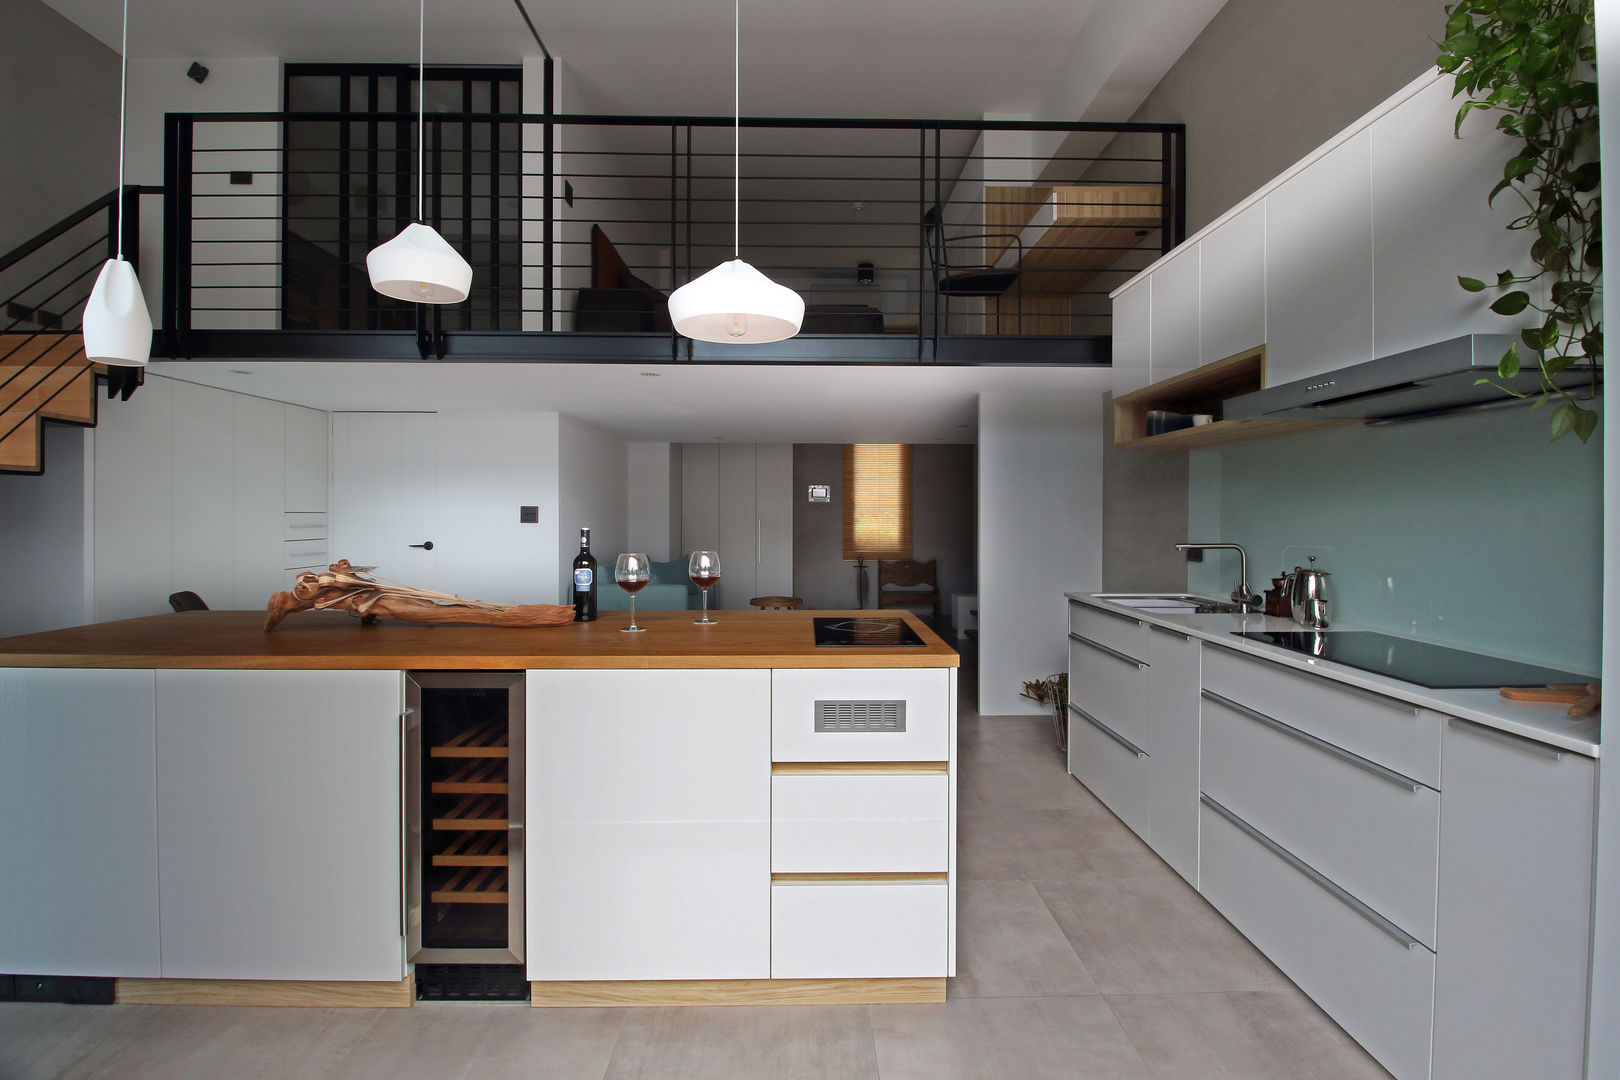 01 樂沐室內設計有限公司 Scandinavian style kitchen Wood-Plastic Composite